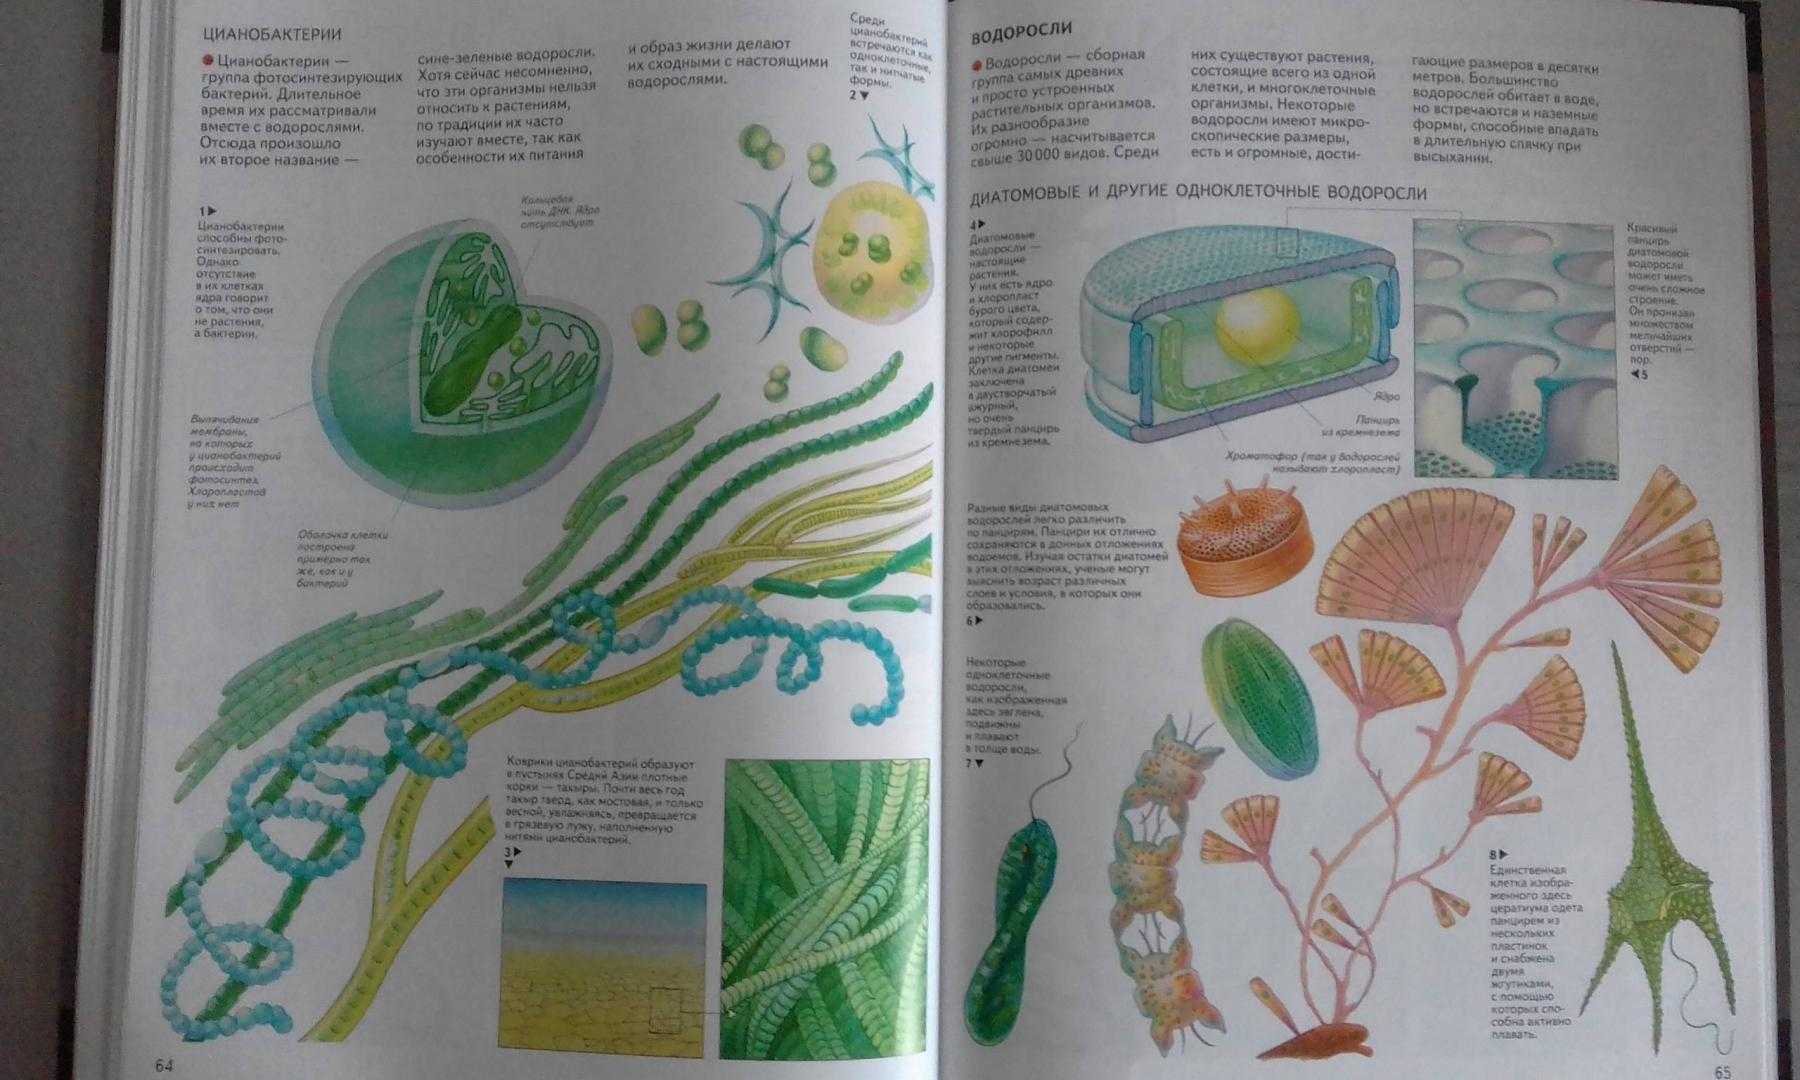 Стихи про биологию - короткие четверостишия про биологию для детей